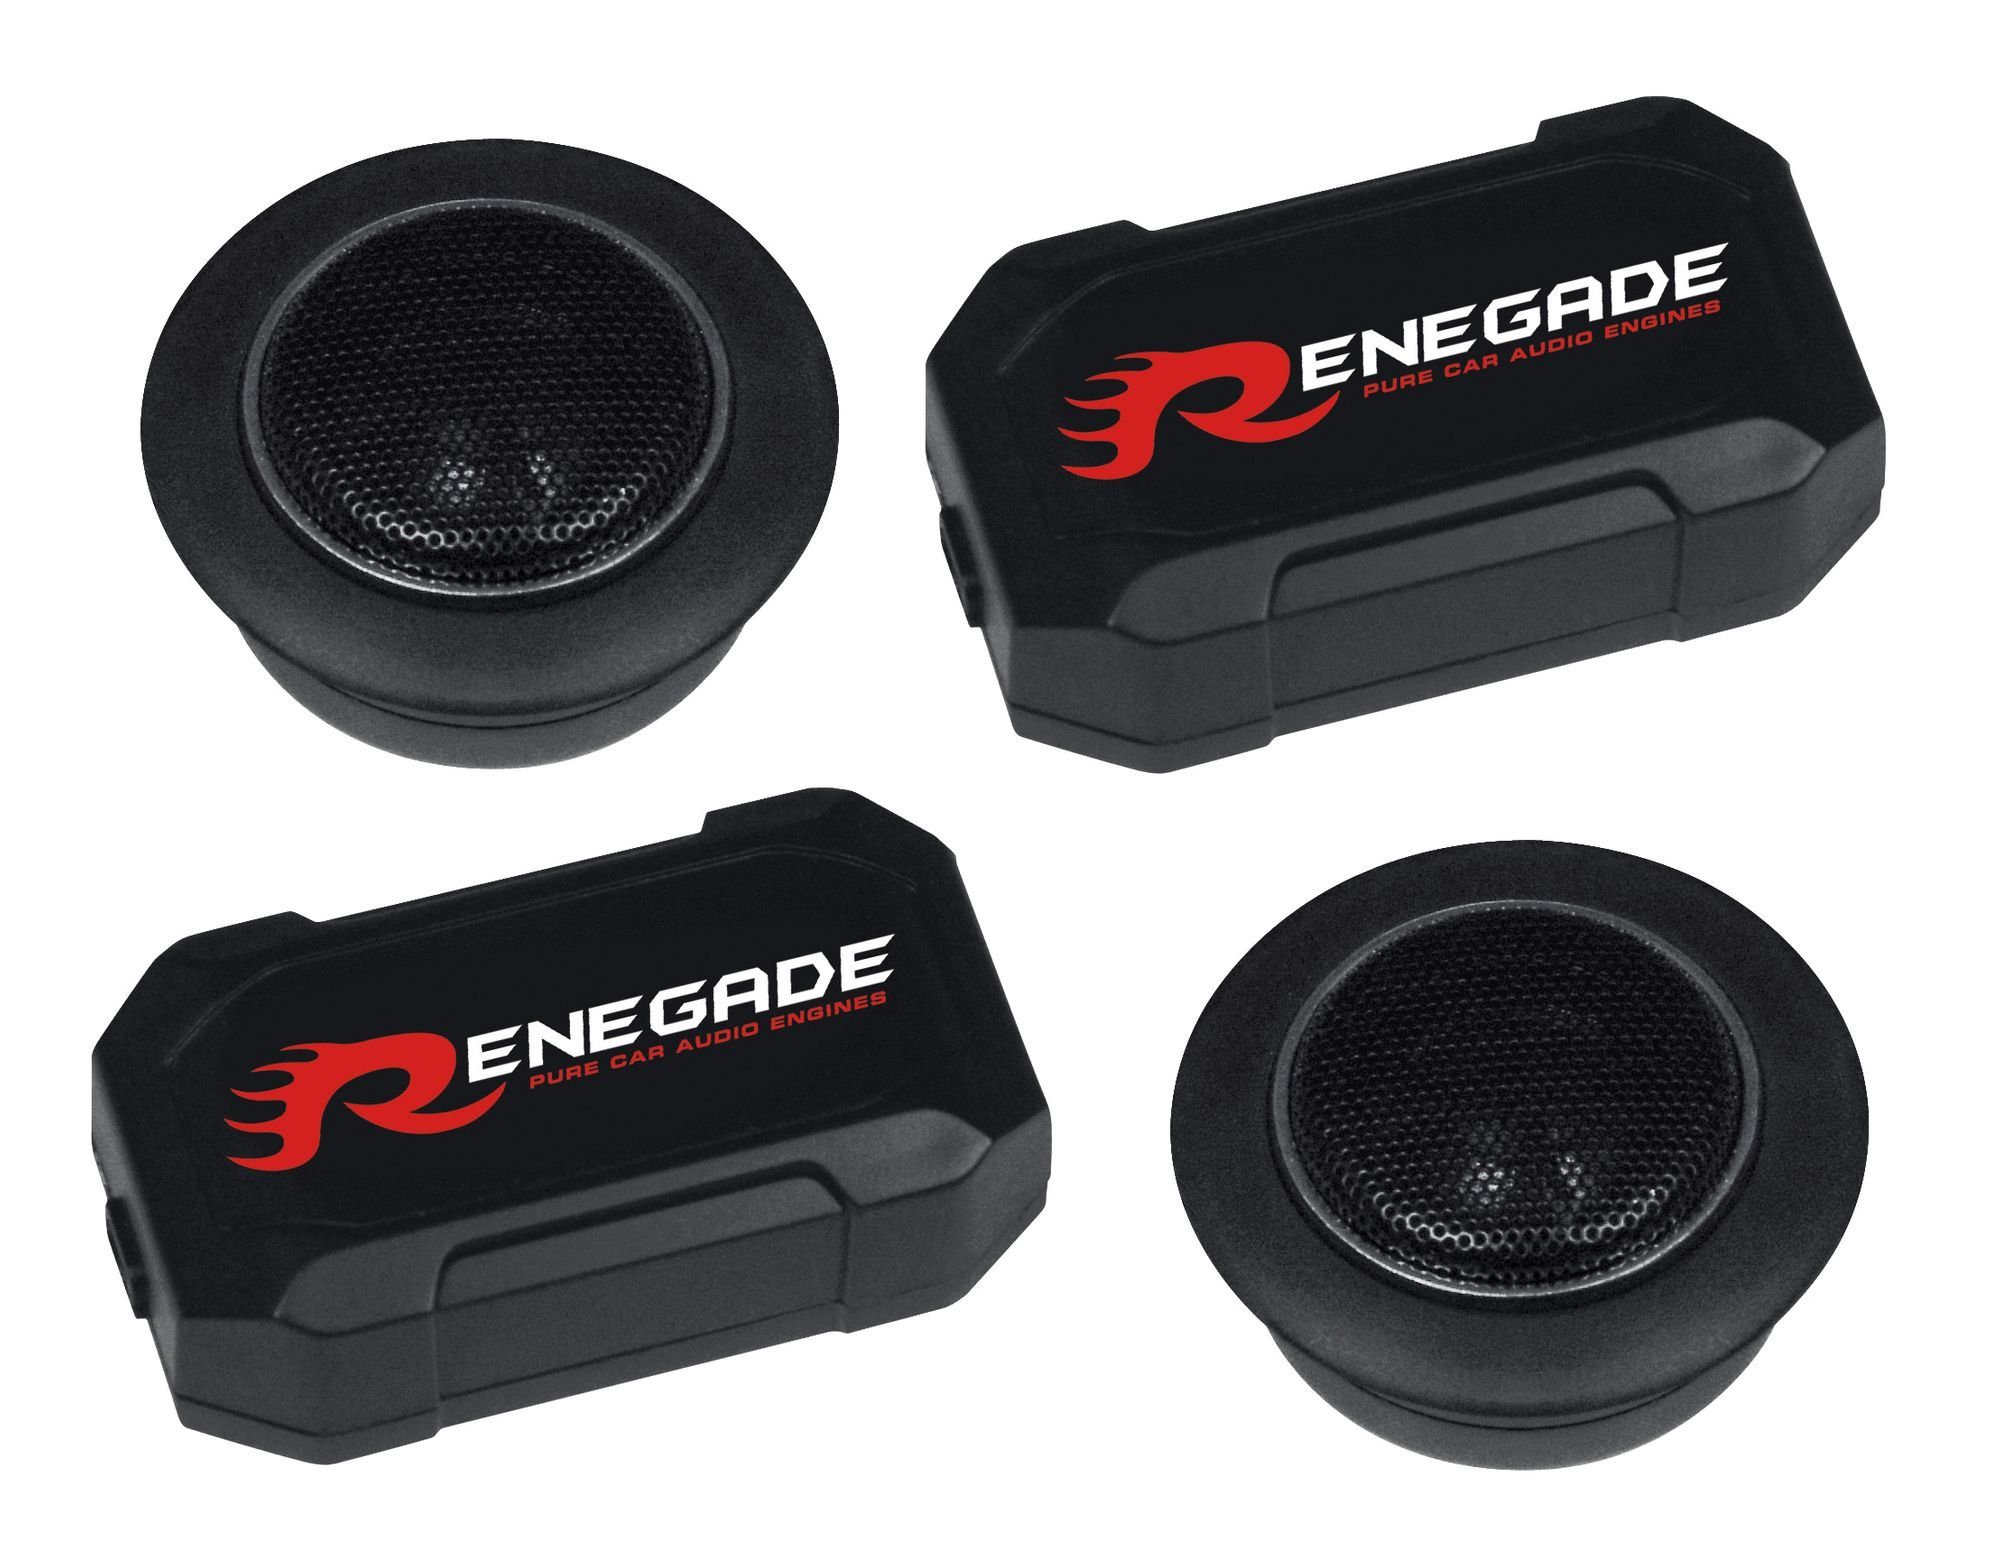 Renegade RX 6.2T (Renegade Gewebe Hochtöner Frequenzweichen) Frequenzweichen RX Gewebe Auto-Lautsprecher mit mit Hochtöner 6.2T